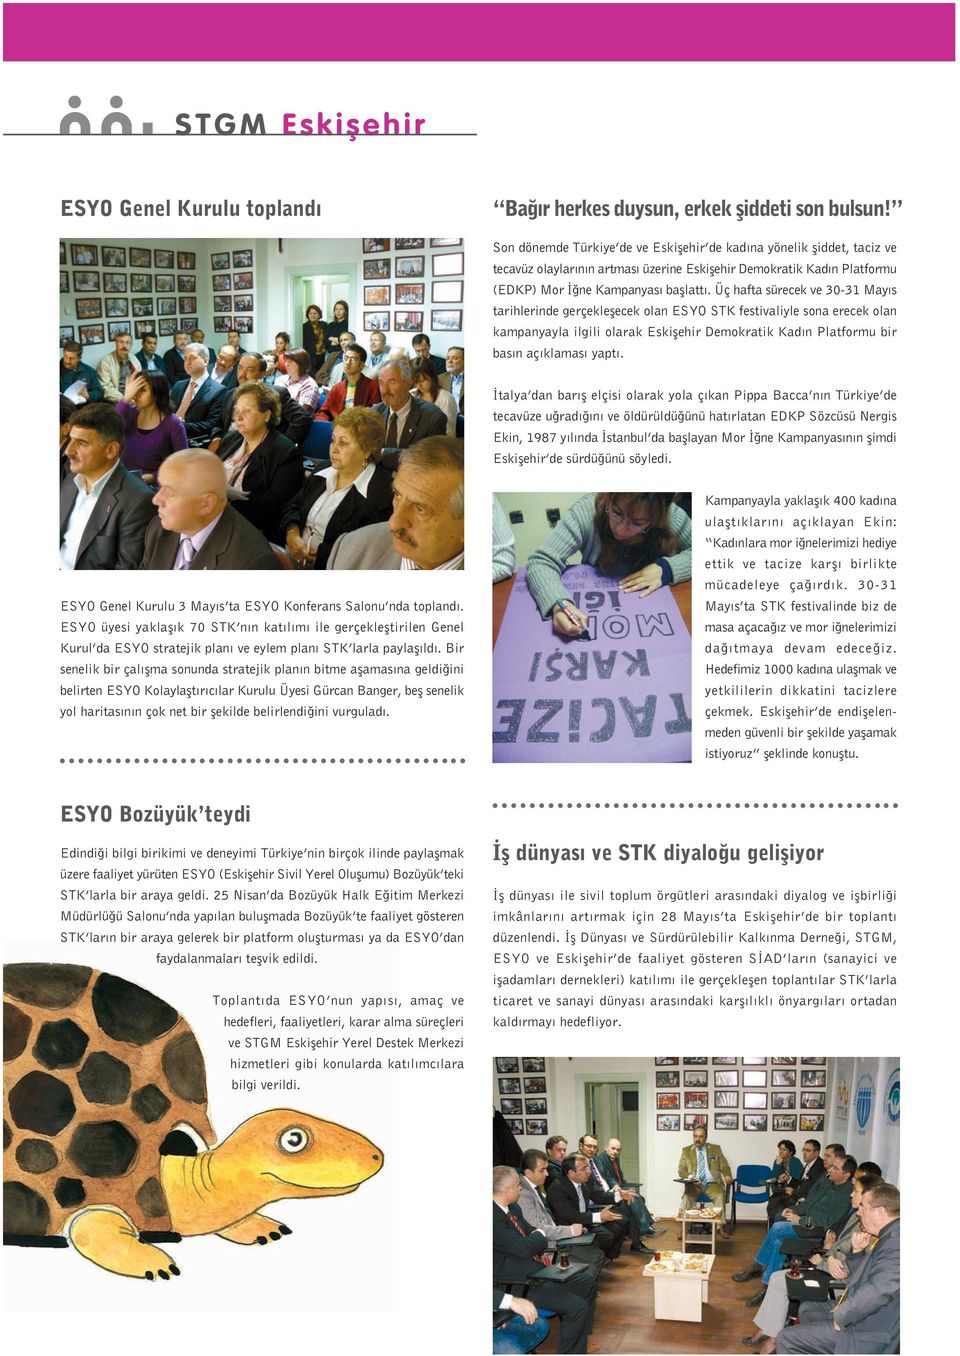 Üç hafta sürecek ve 30-31 Mayıs tarihlerinde gerçekleşecek olan ESYO STK festivaliyle sona erecek olan kampanyayla ilgili olarak Eskişehir Demokratik Kadın Platformu bir basın açıklaması yaptı.